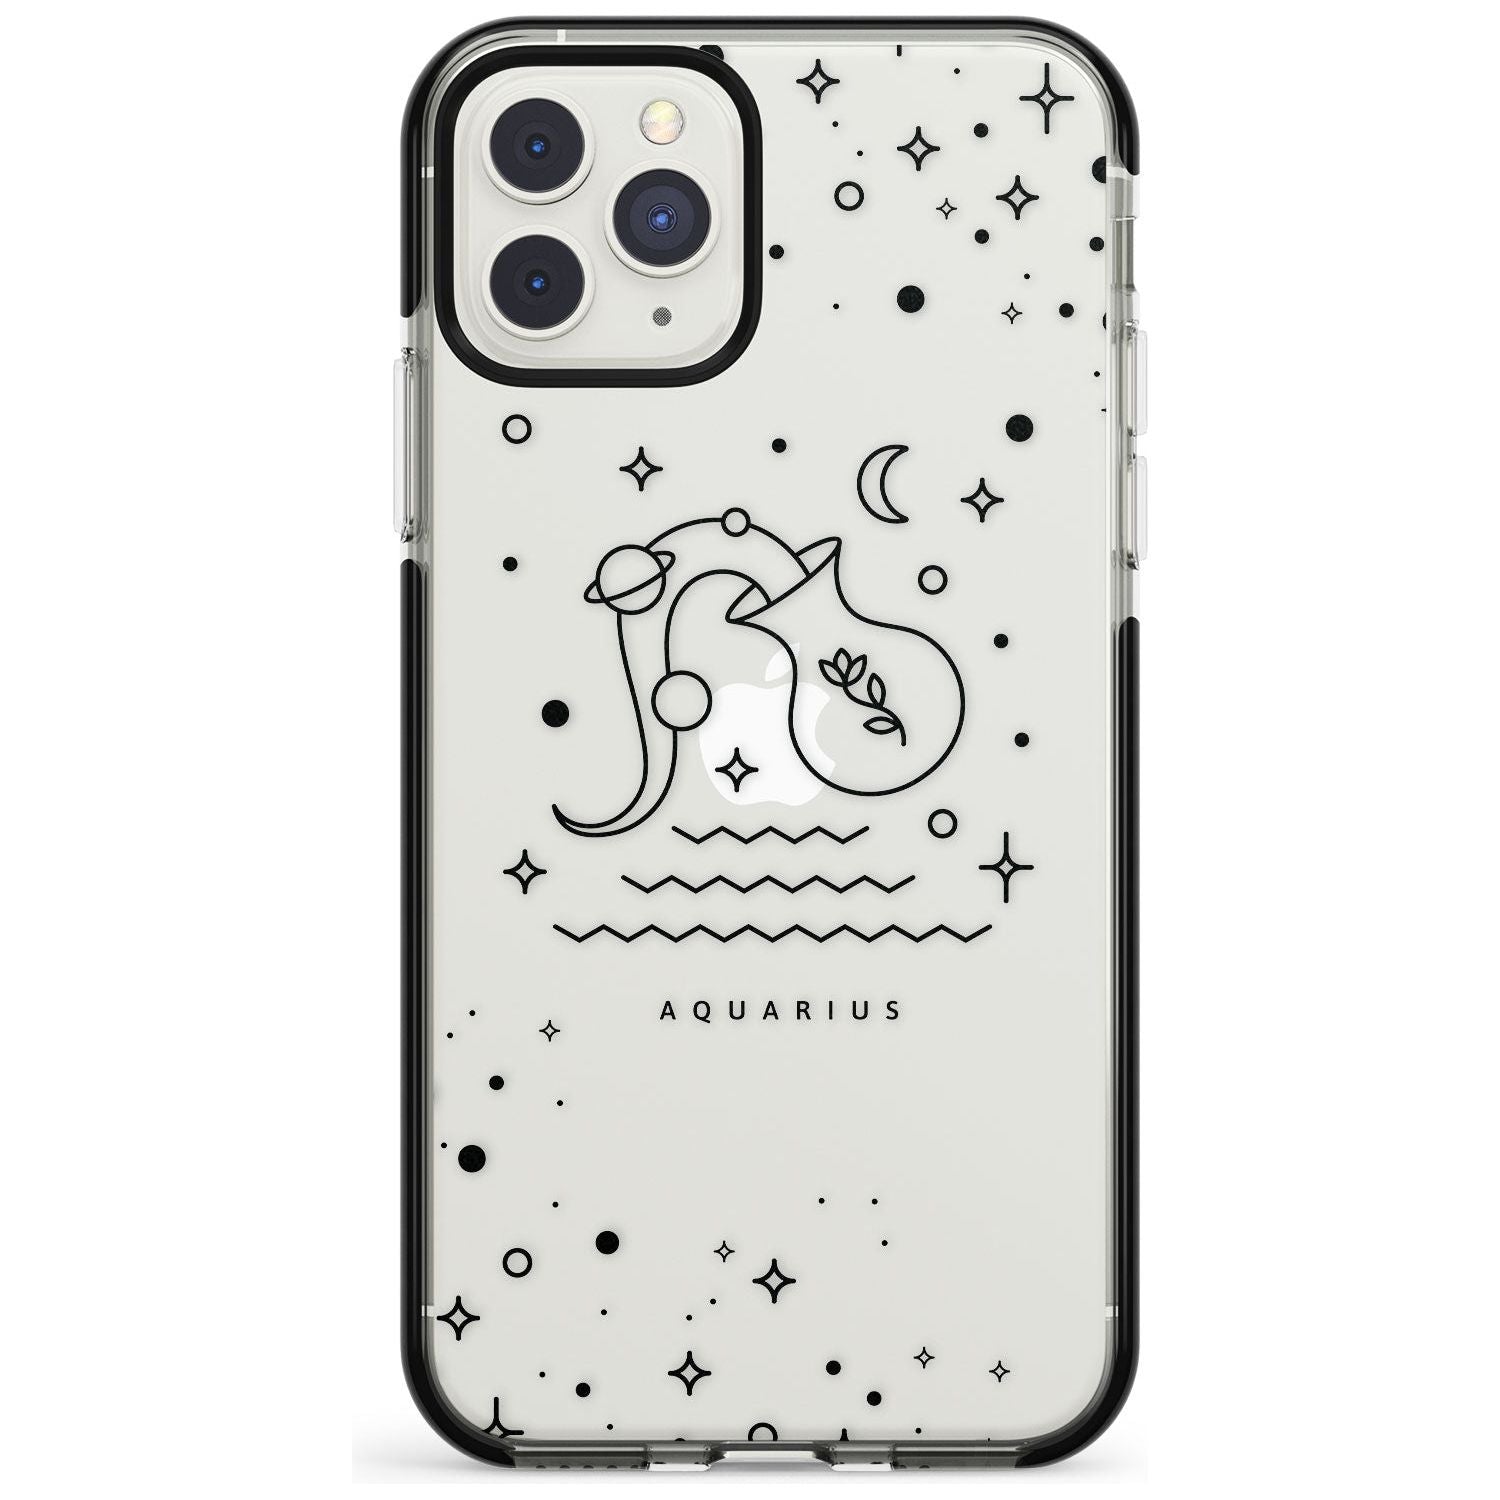 Aquarius Emblem - Transparent Design Black Impact Phone Case for iPhone 11 Pro Max